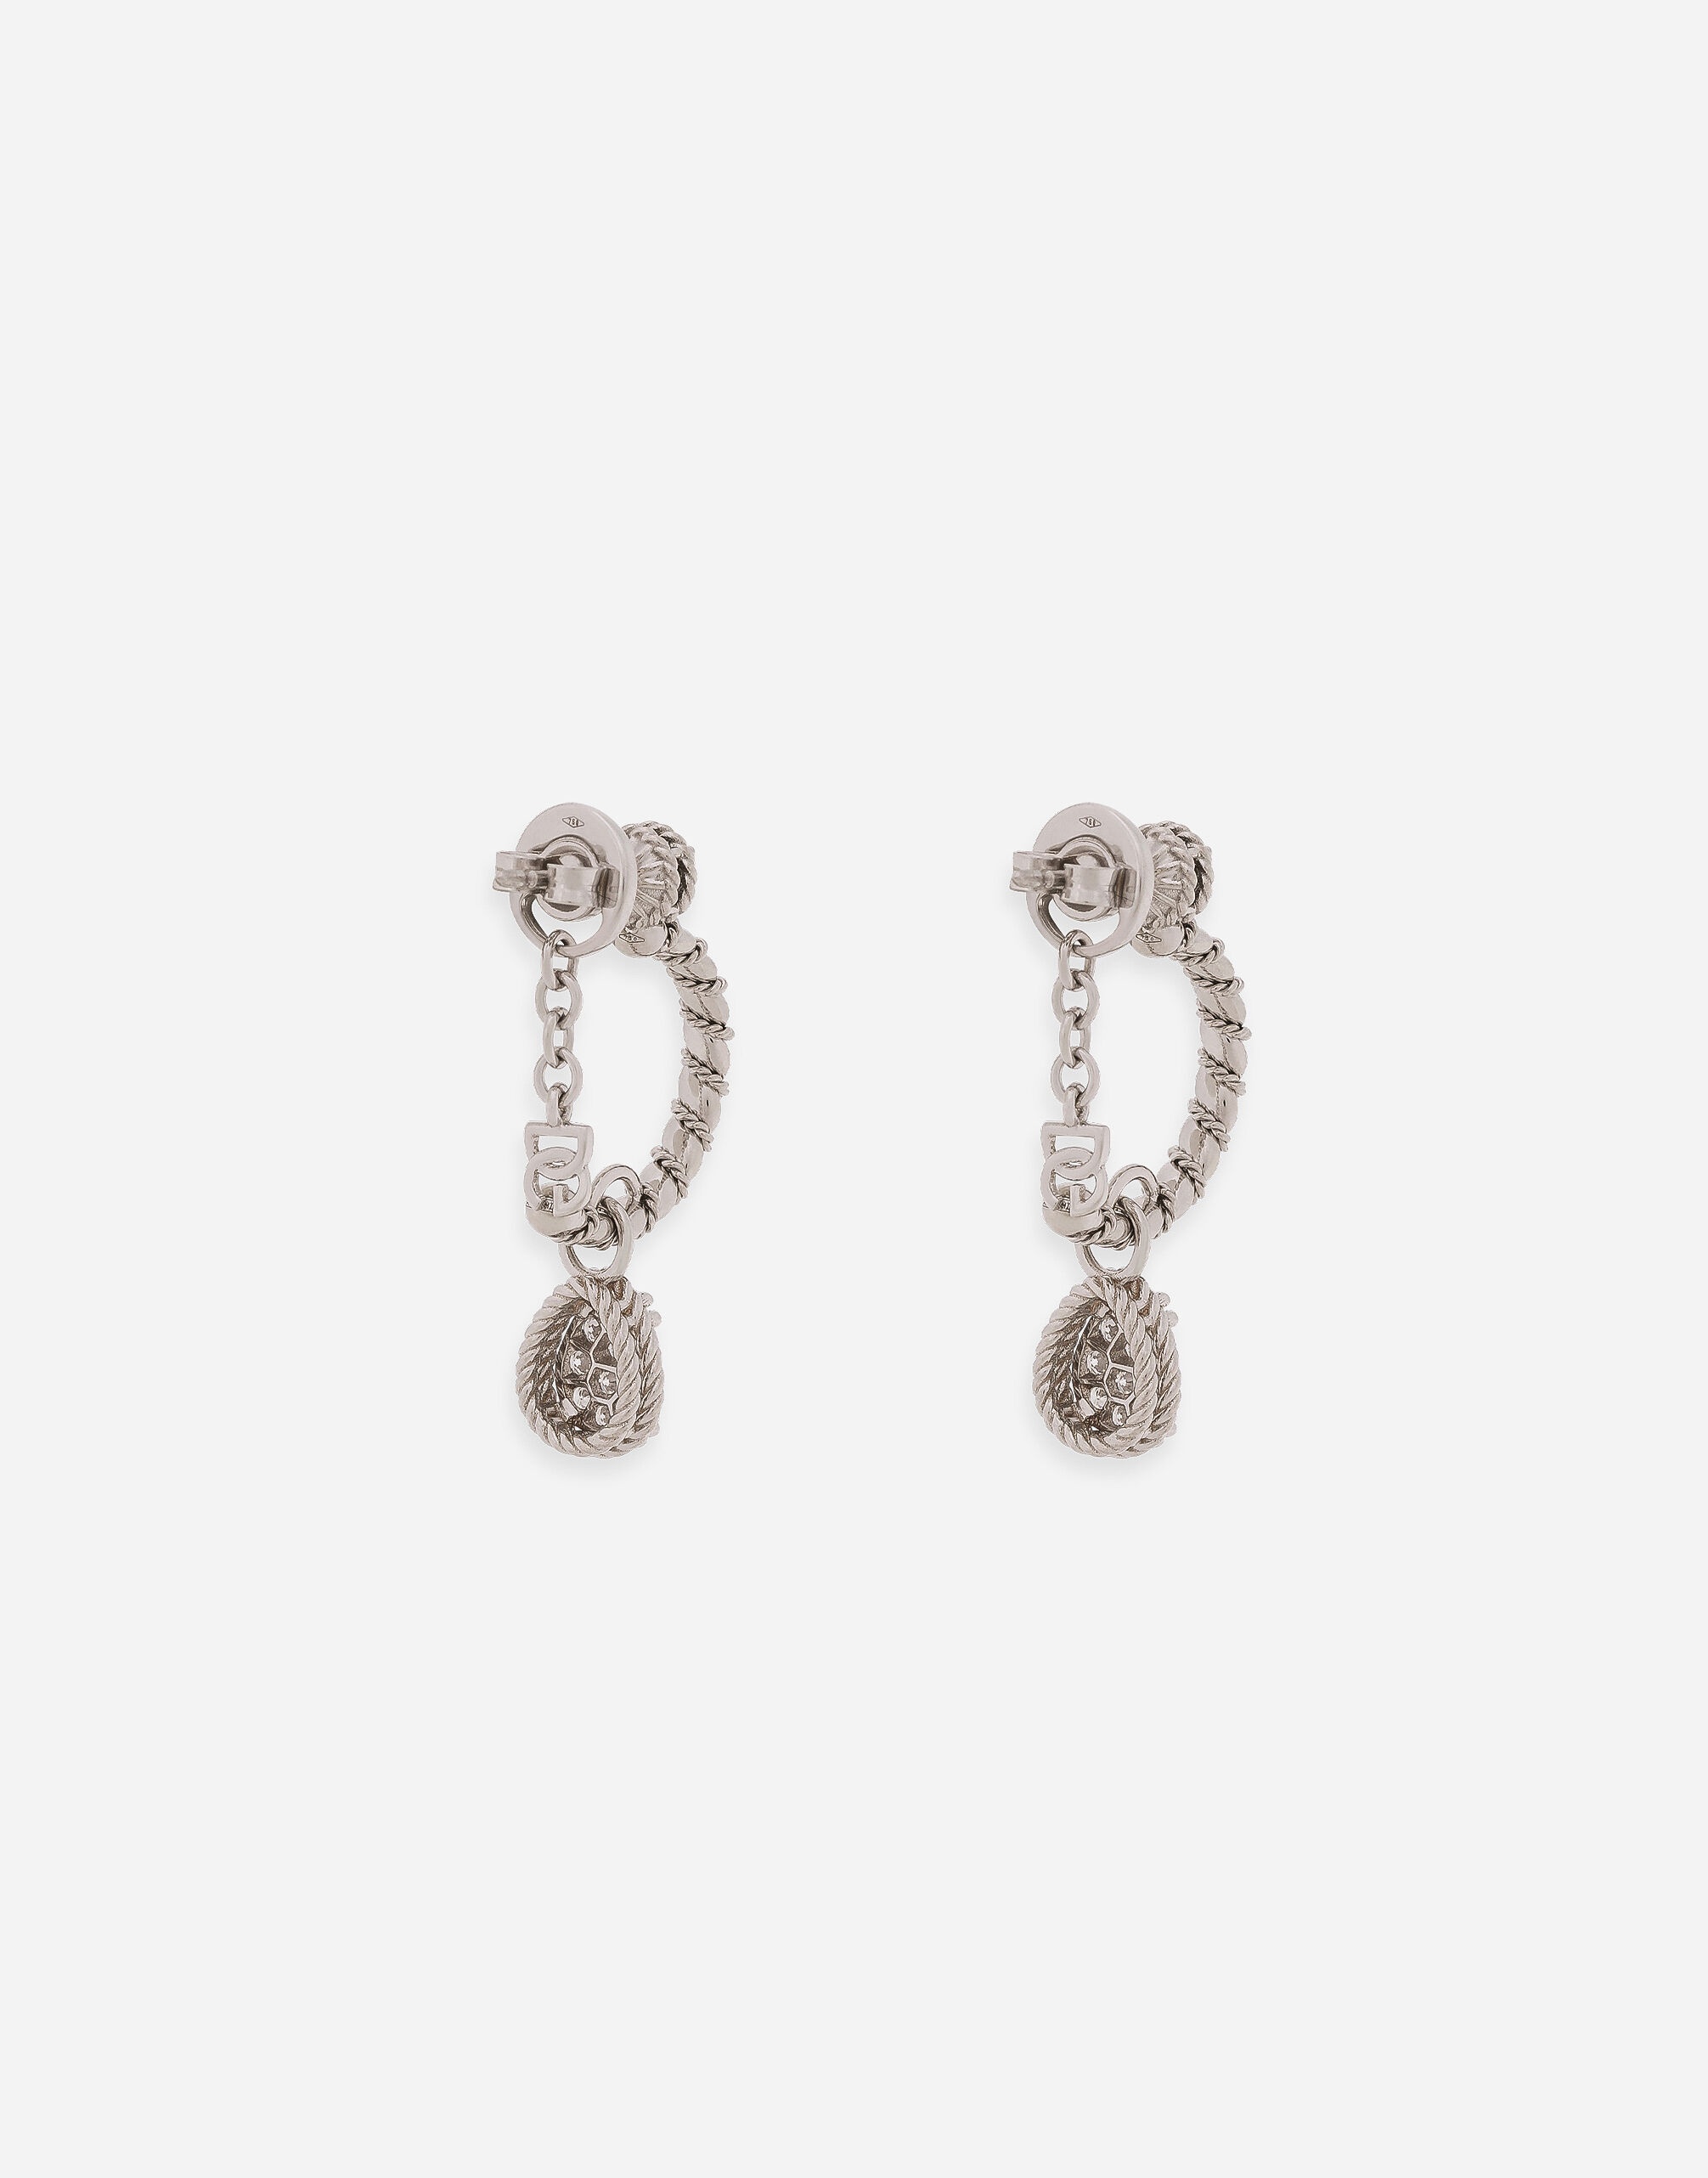 Easy Diamond earrings in white gold 18kt and diamonds pavé - 4